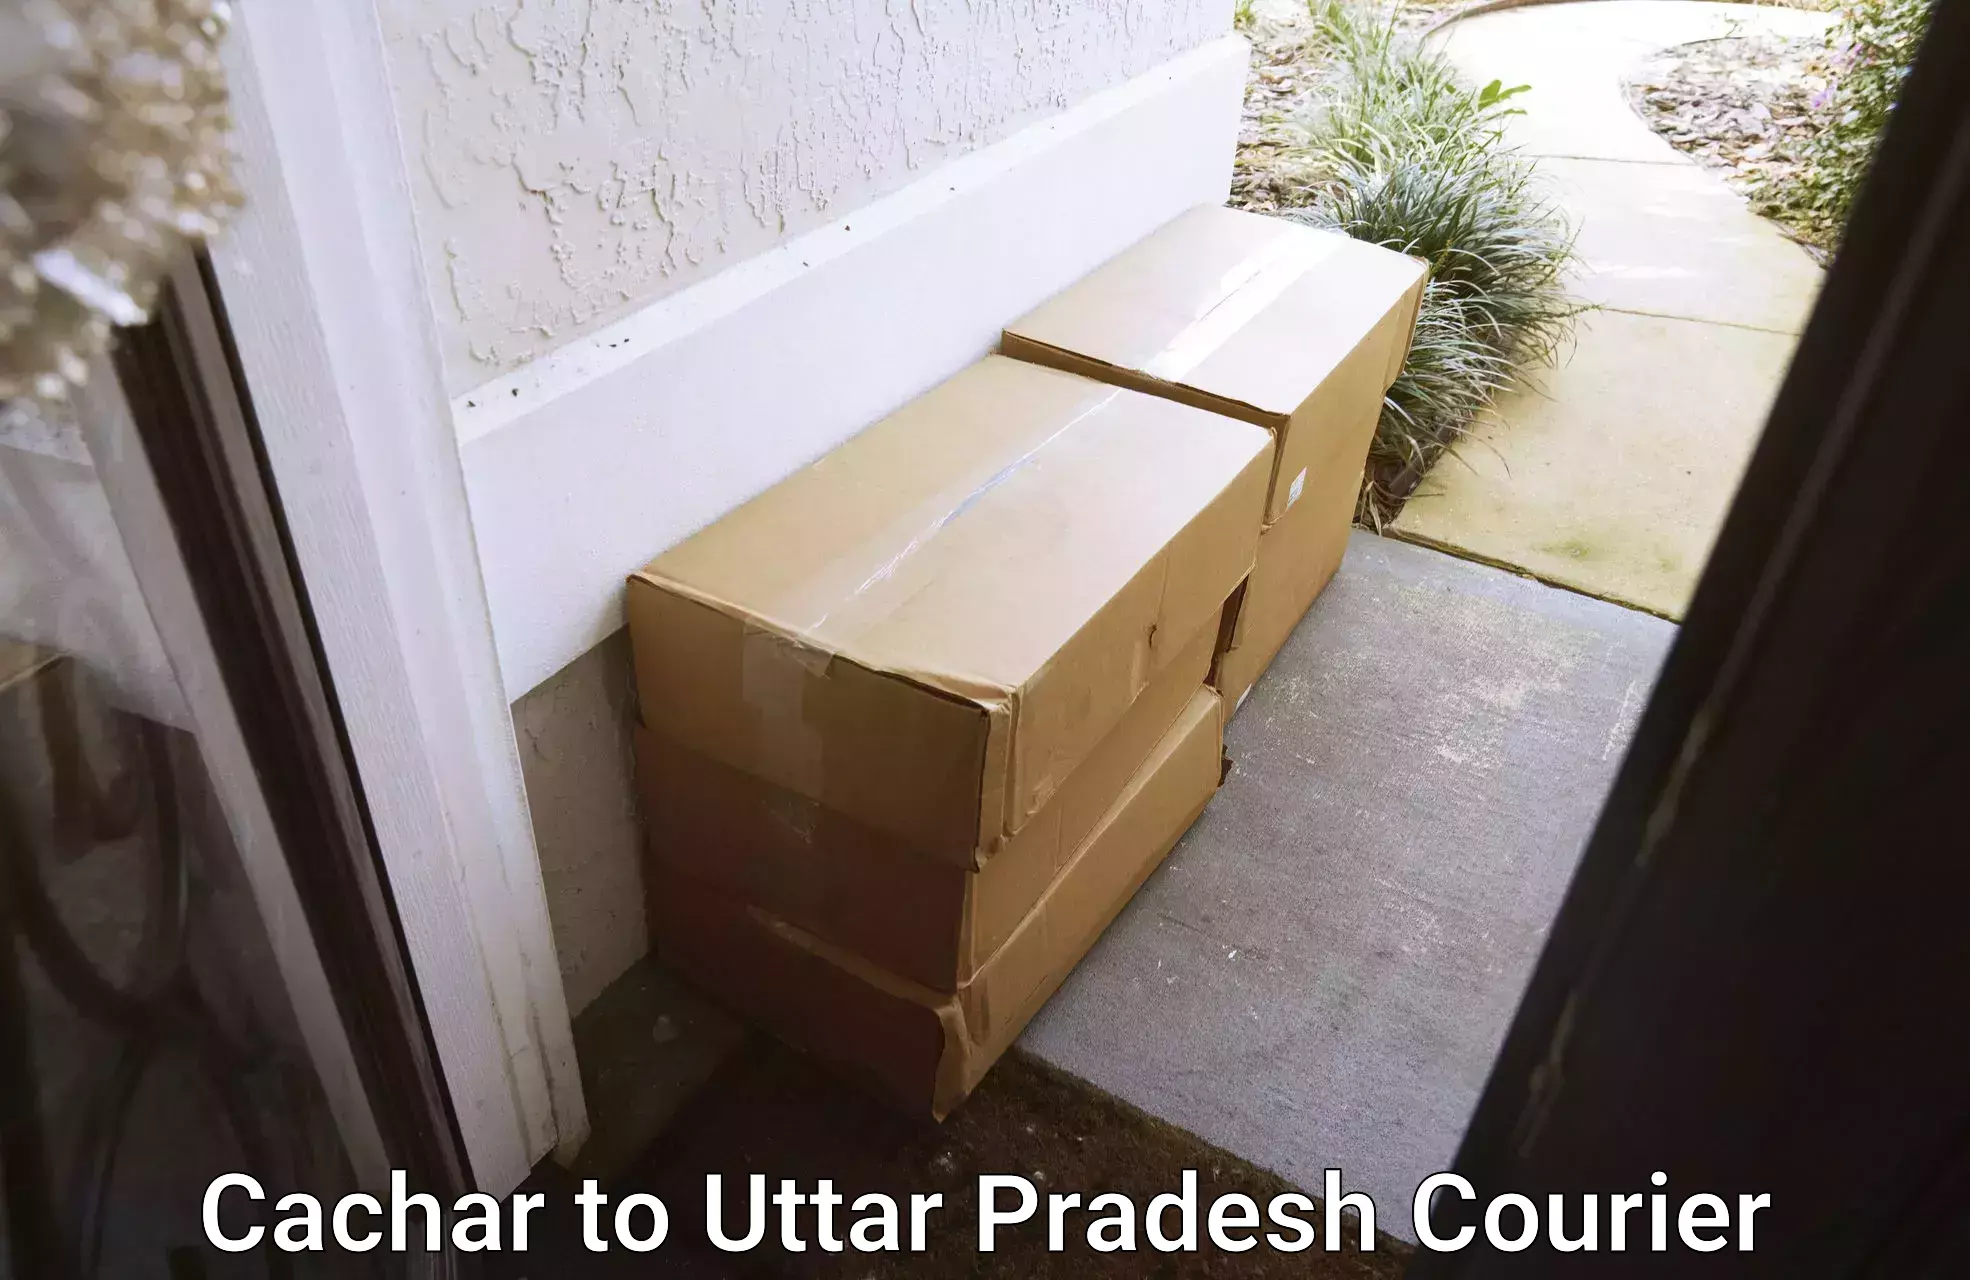 Local courier options Cachar to Fazilnagar